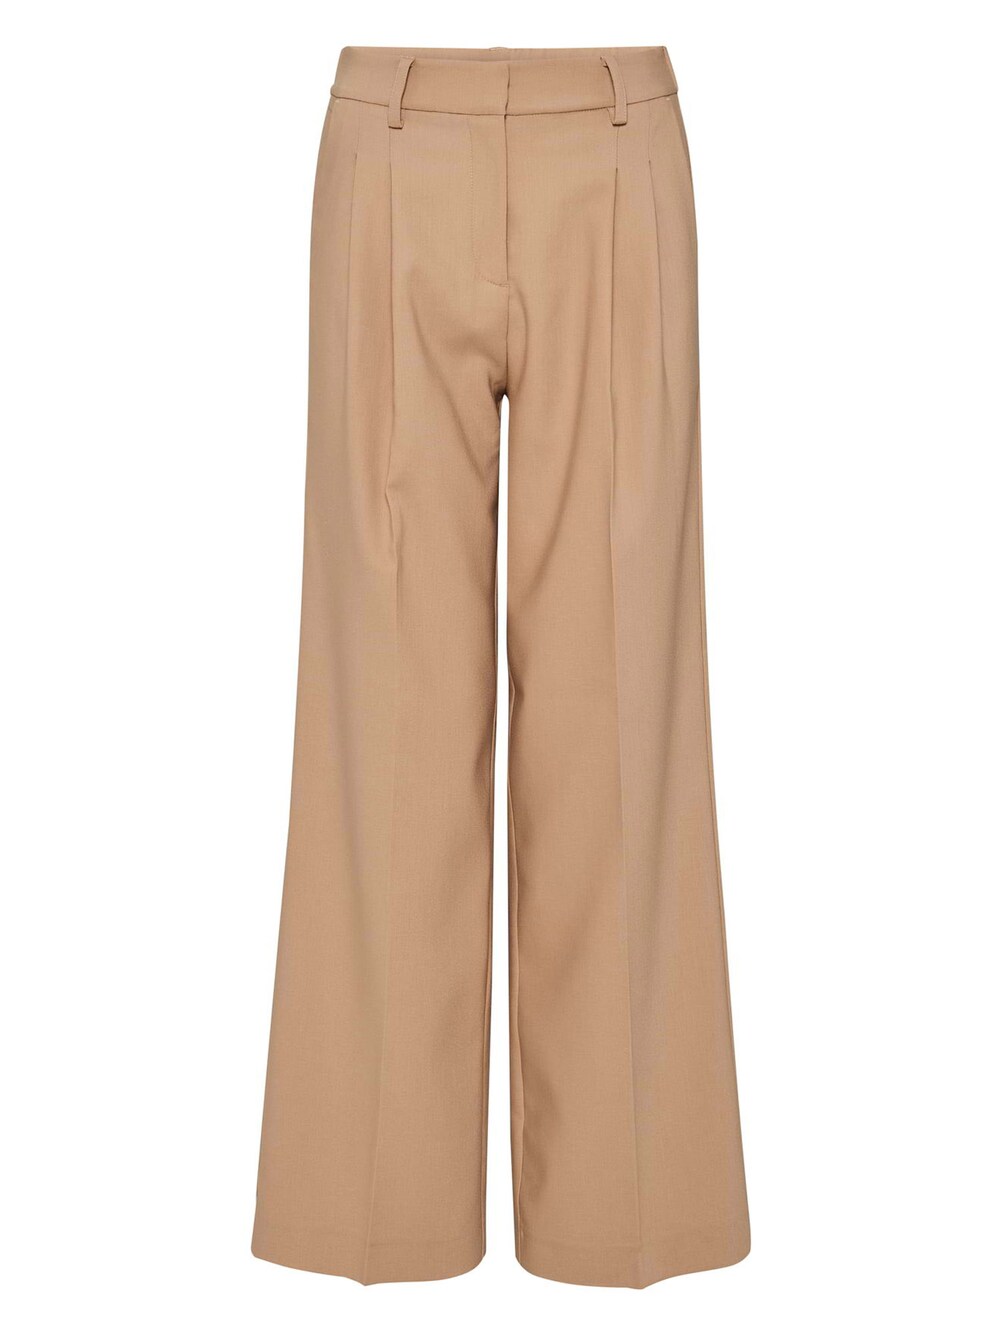 Широкие брюки со складками Opus Melpa, бежевый широкие брюки со складками misspap бежевый